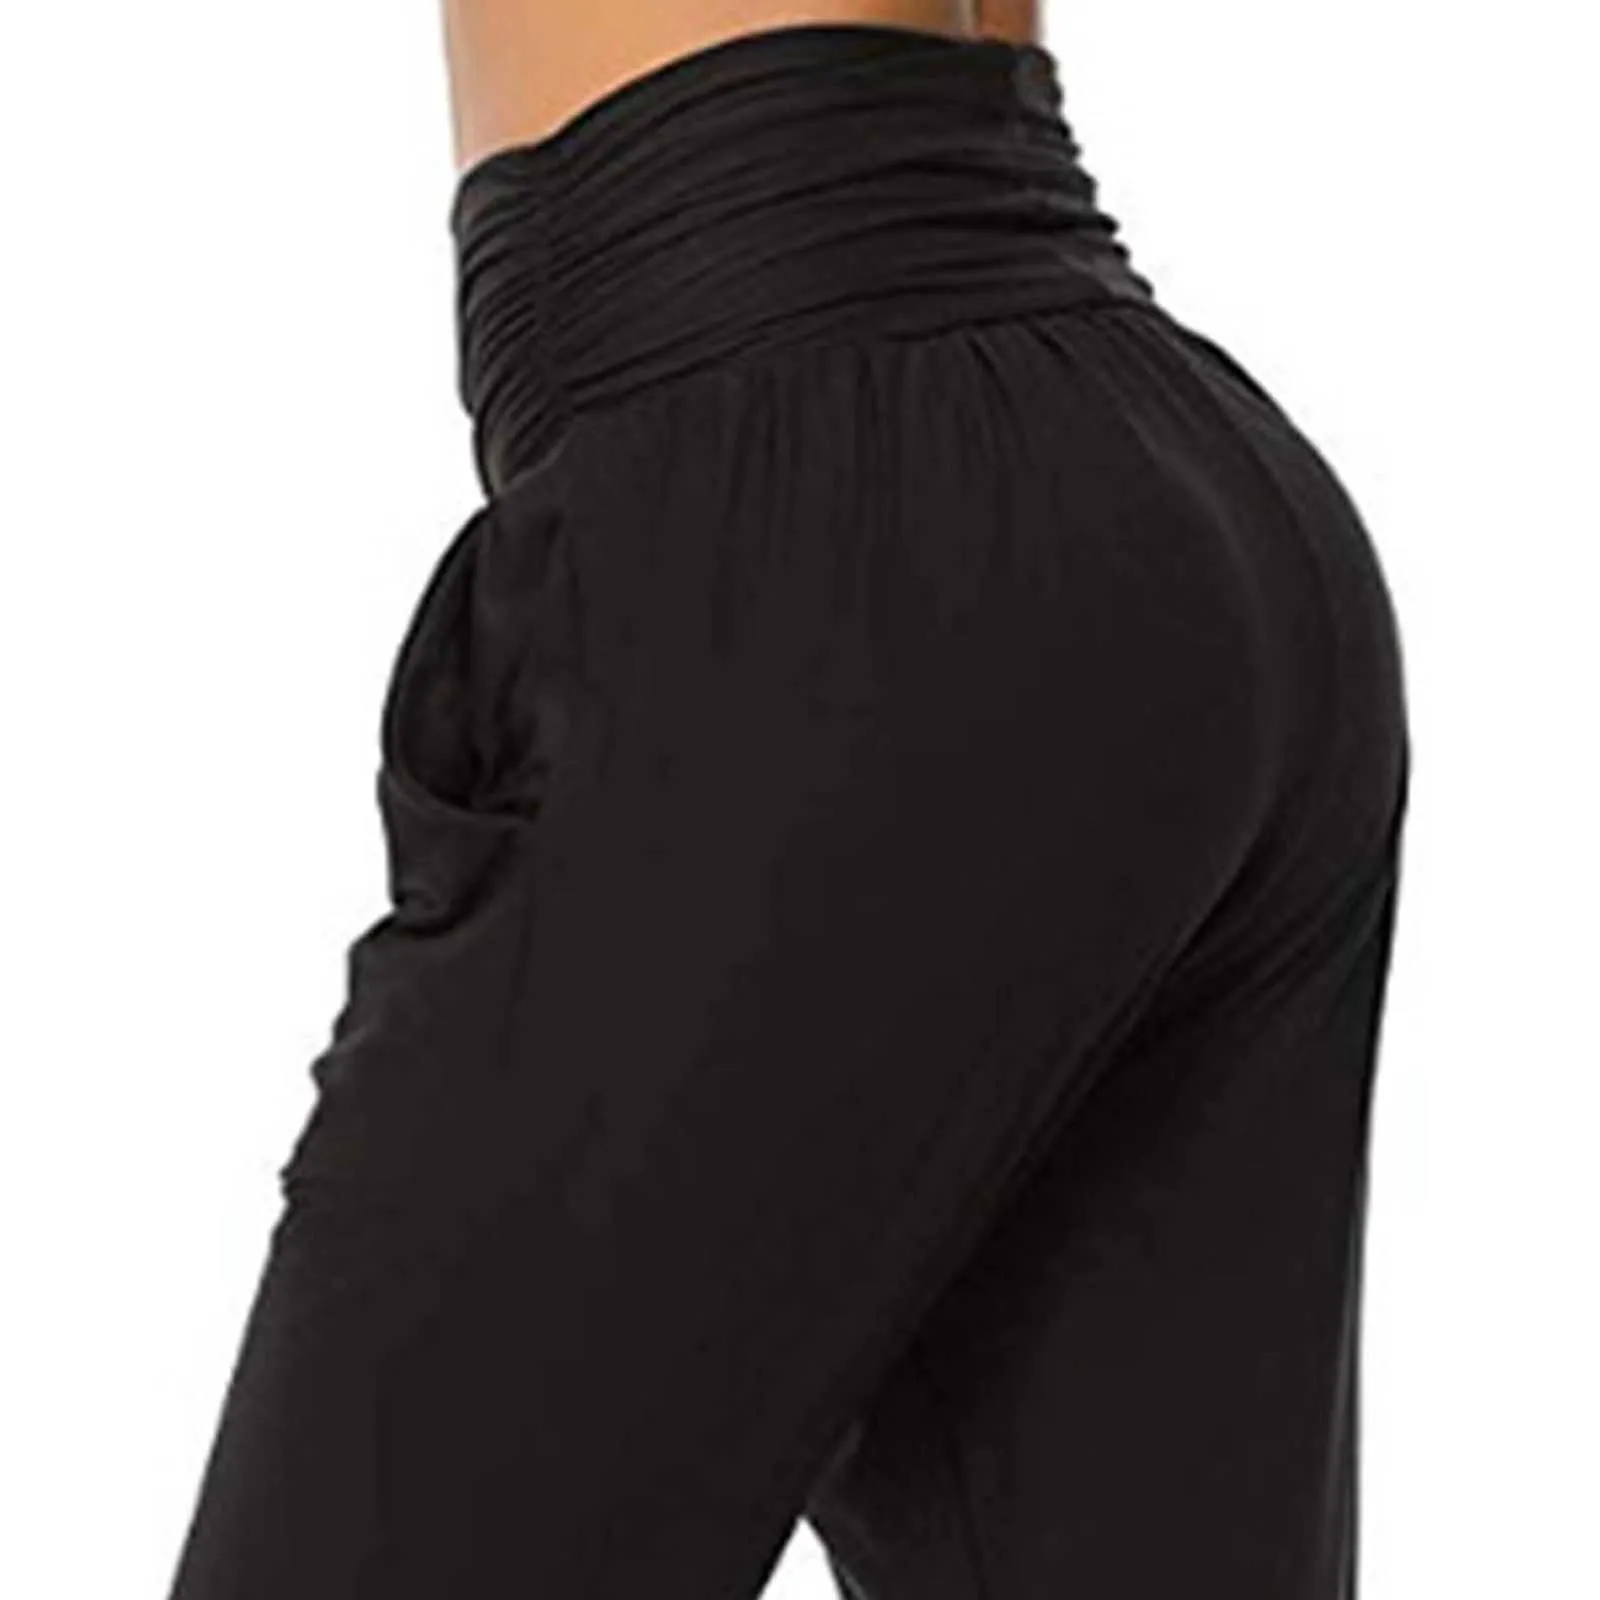 Pantalons pantalons d'entraînement dames sarouel taille haute lâche Fitness pantalons de course pour femmes couleur unie élasticité pantalon # F3 Q0801